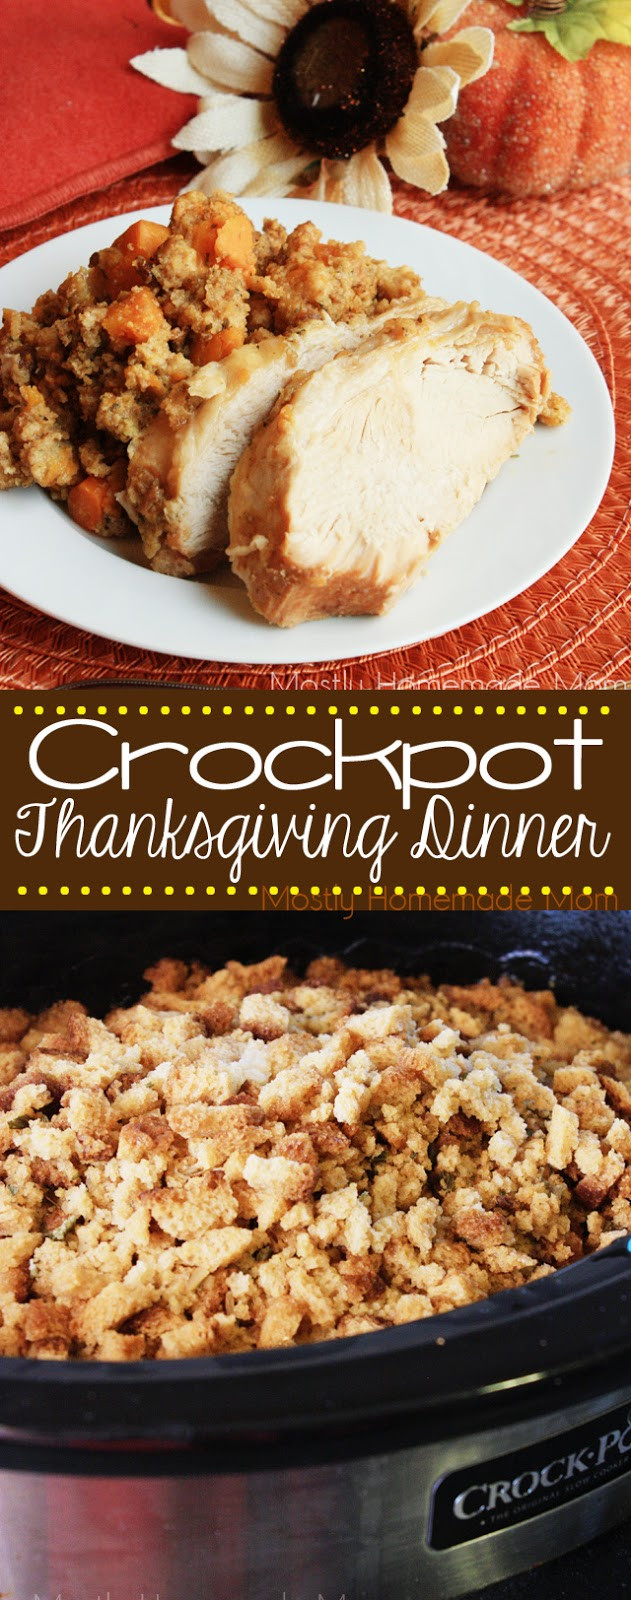 Crockpot Thanksgiving Turkey
 Crockpot Thanksgiving Dinner RECIPE VIDEO